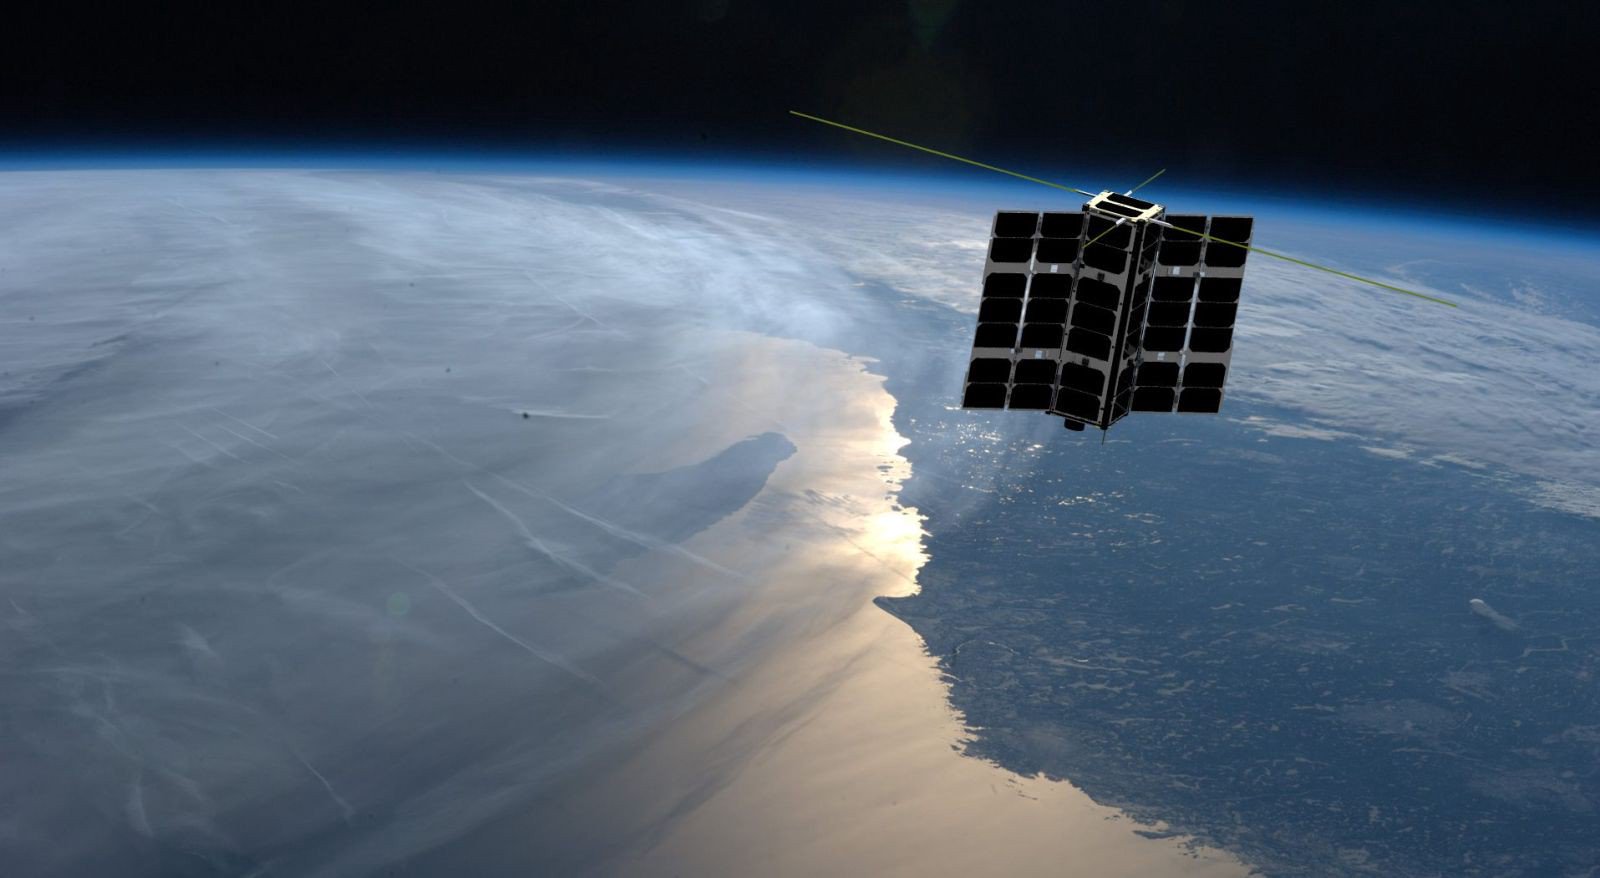 Dwa satelity prawie do czynienia. Jak udało im się uniknąć katastrofy?